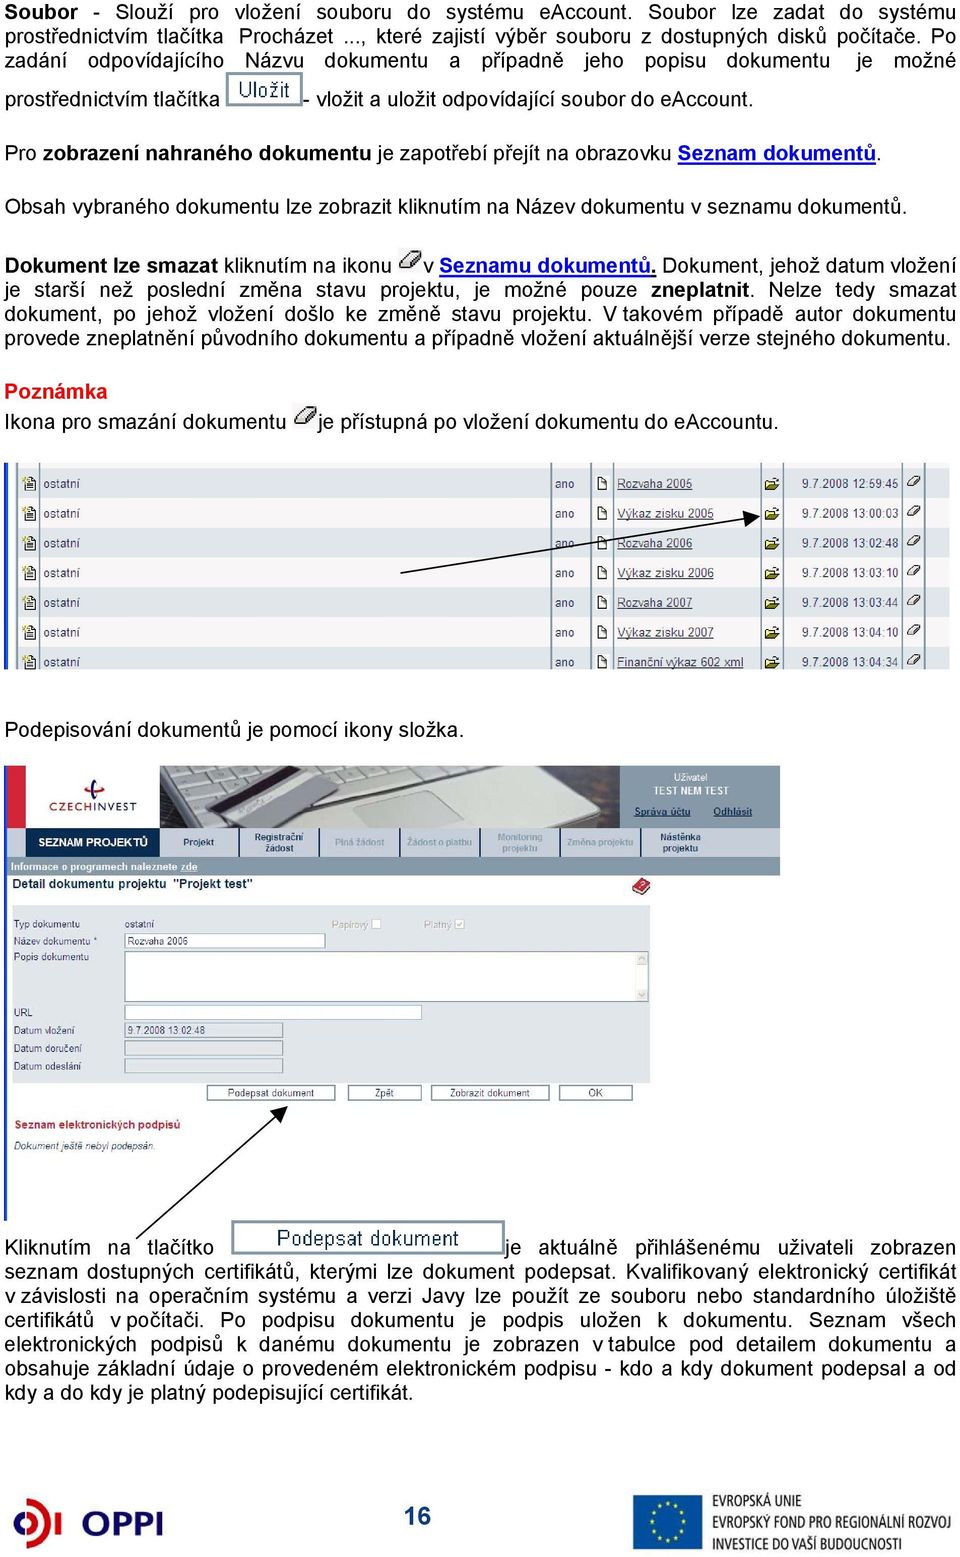 Pro zobrazení nahraného dokumentu je zapotřebí přejít na obrazovku Seznam dokumentů. Obsah vybraného dokumentu lze zobrazit kliknutím na Název dokumentu v seznamu dokumentů.